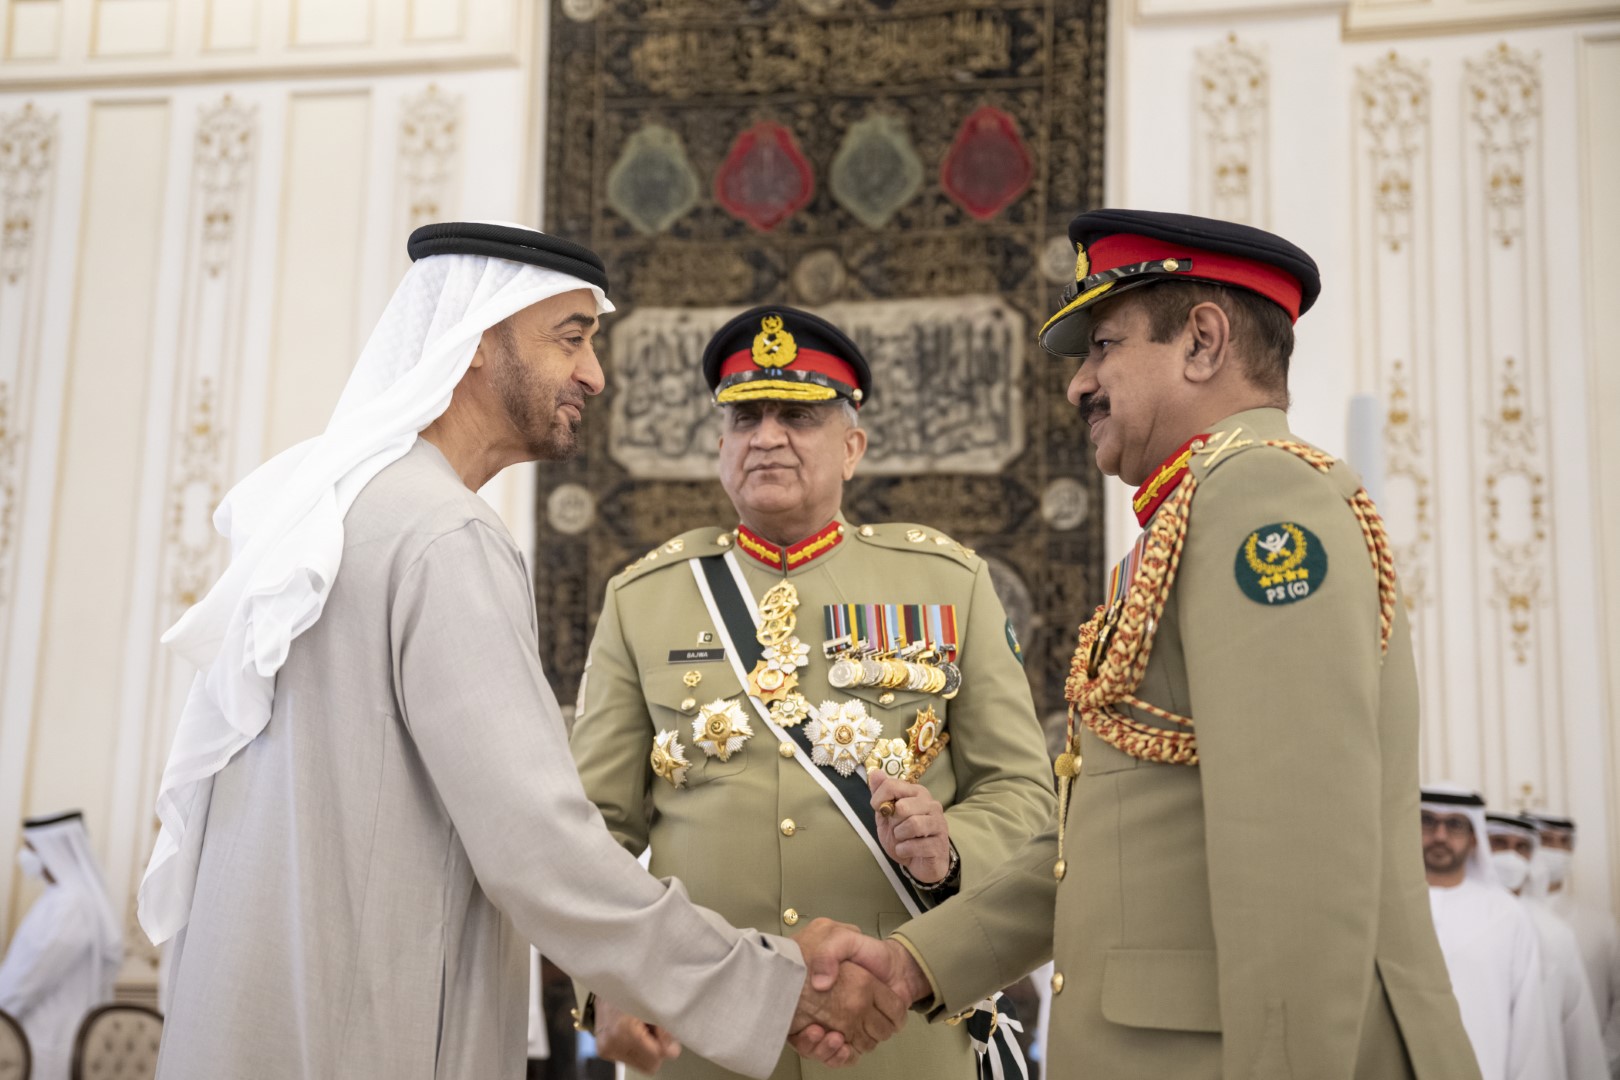 رئيس دولة الإمارات محمد بن زايد آل نهيان في استقبال  جاويد باجوا علاقات التعاون والعمل المشترك  (وام)